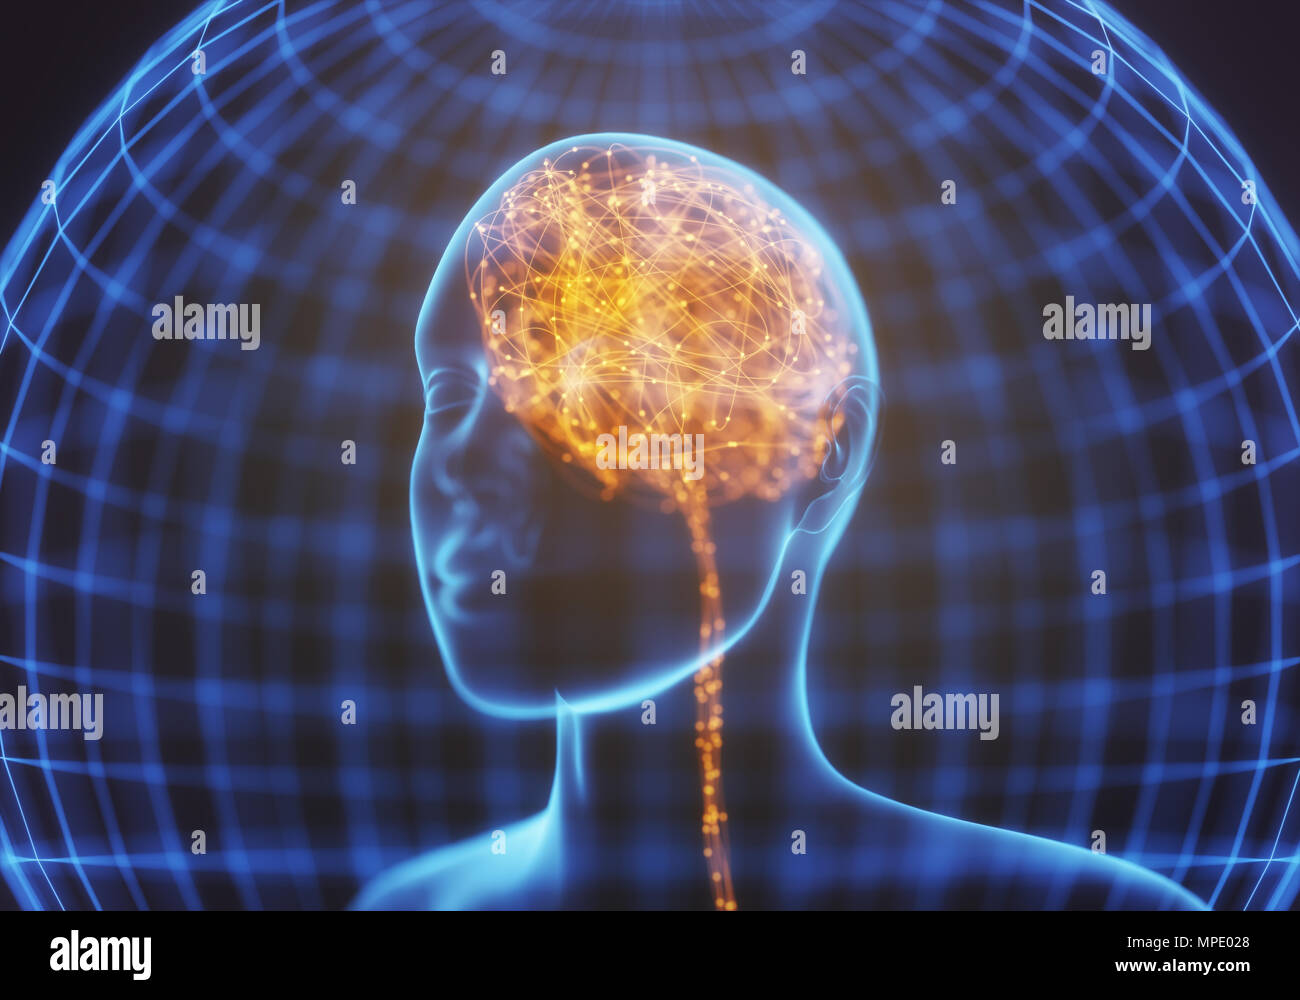 Ilustración 3D. Radiografía de la cabeza y el cerebro humano en concepto de conexiones neuronales y pulsos eléctricos. Brilla dentro del cerebro. Poderosa mente. Foto de stock